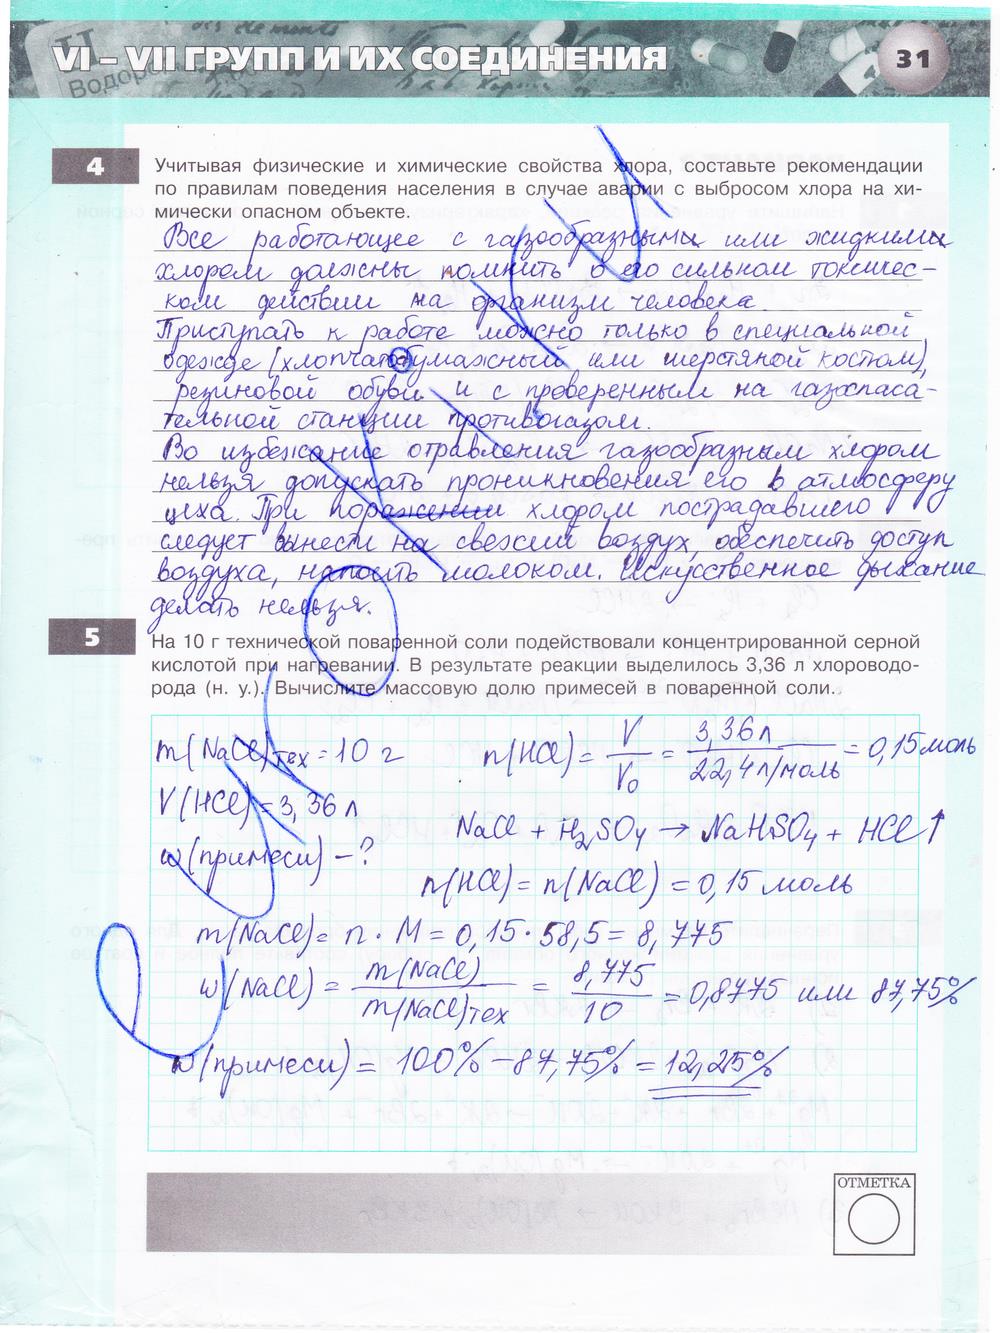 гдз 9 класс тетрадь-экзаменатор страница 31 химия Бобылева, Бирюлина